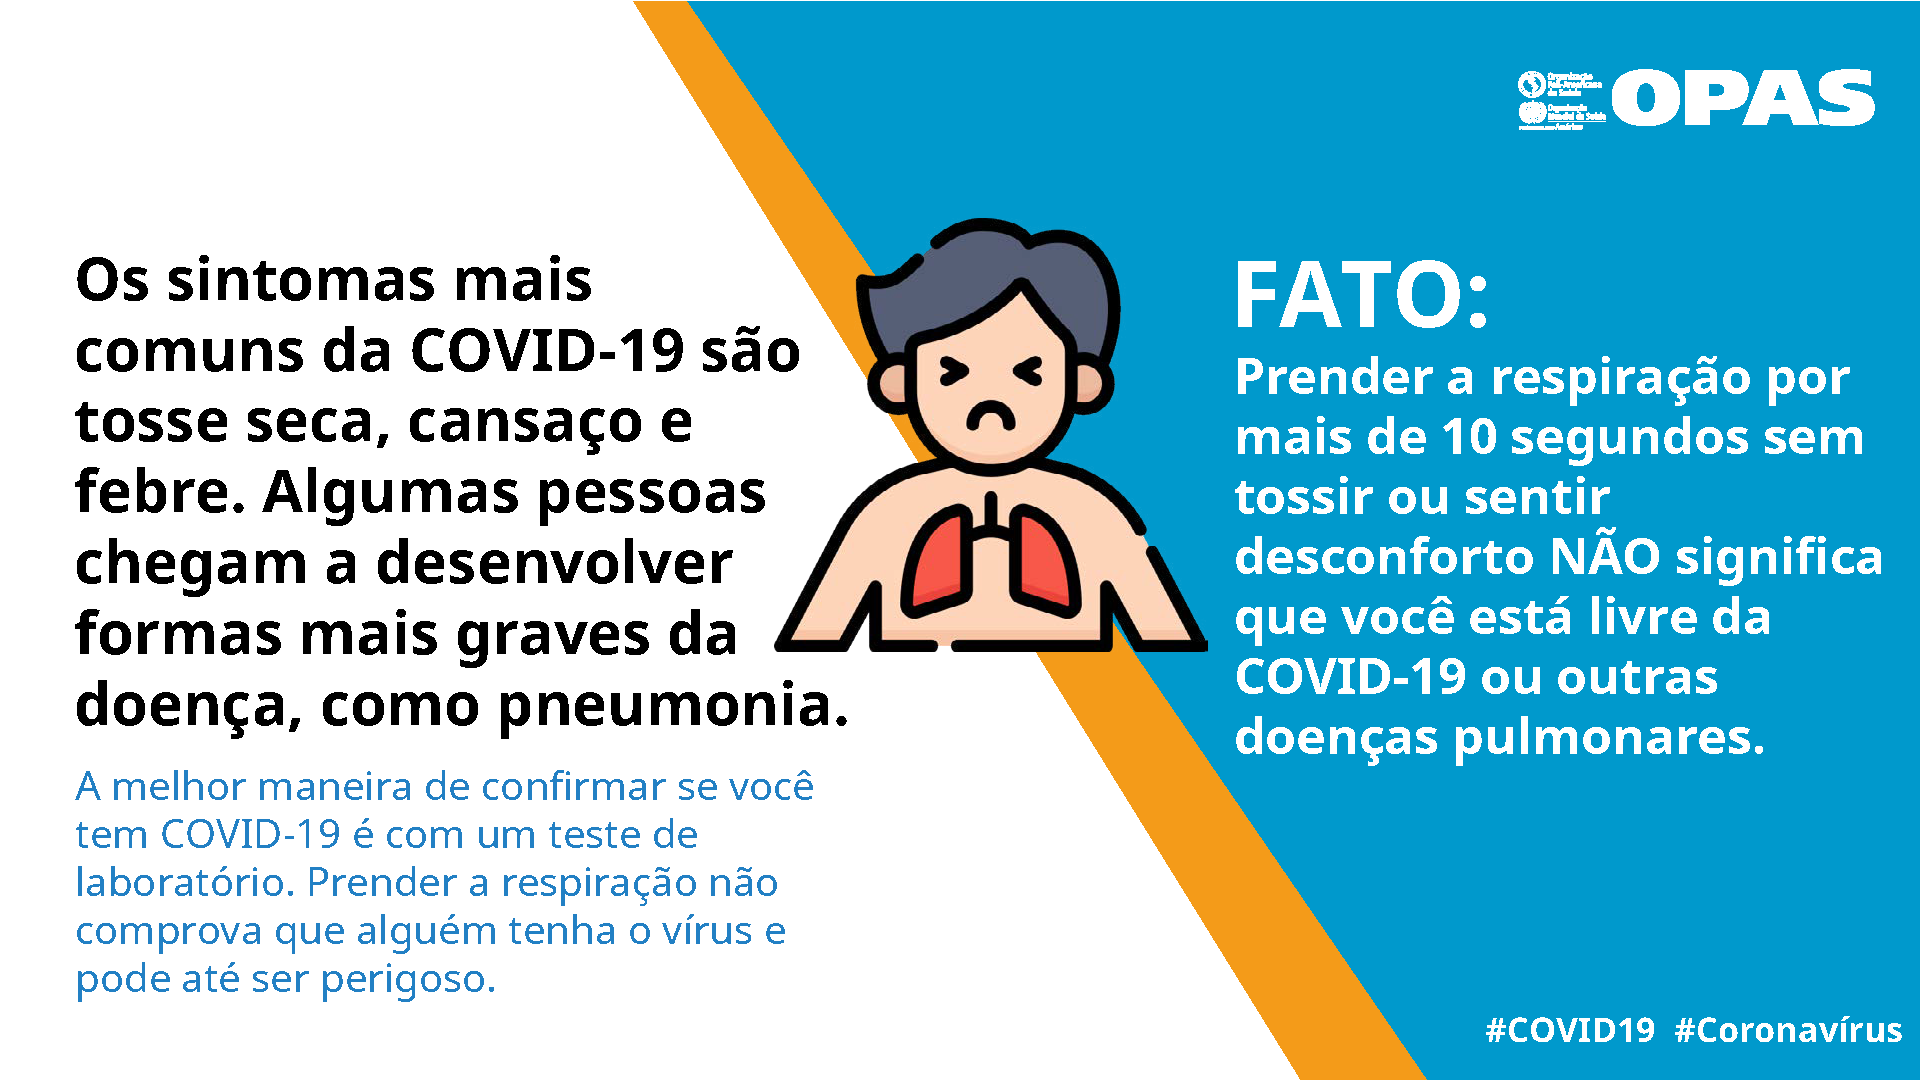 FATO: Prender a respiração por mais de 10 segundos sem tossir ou sentir desconforto NÃO significa que você está livre da COVID-19 ou outras doenças pulmonares.